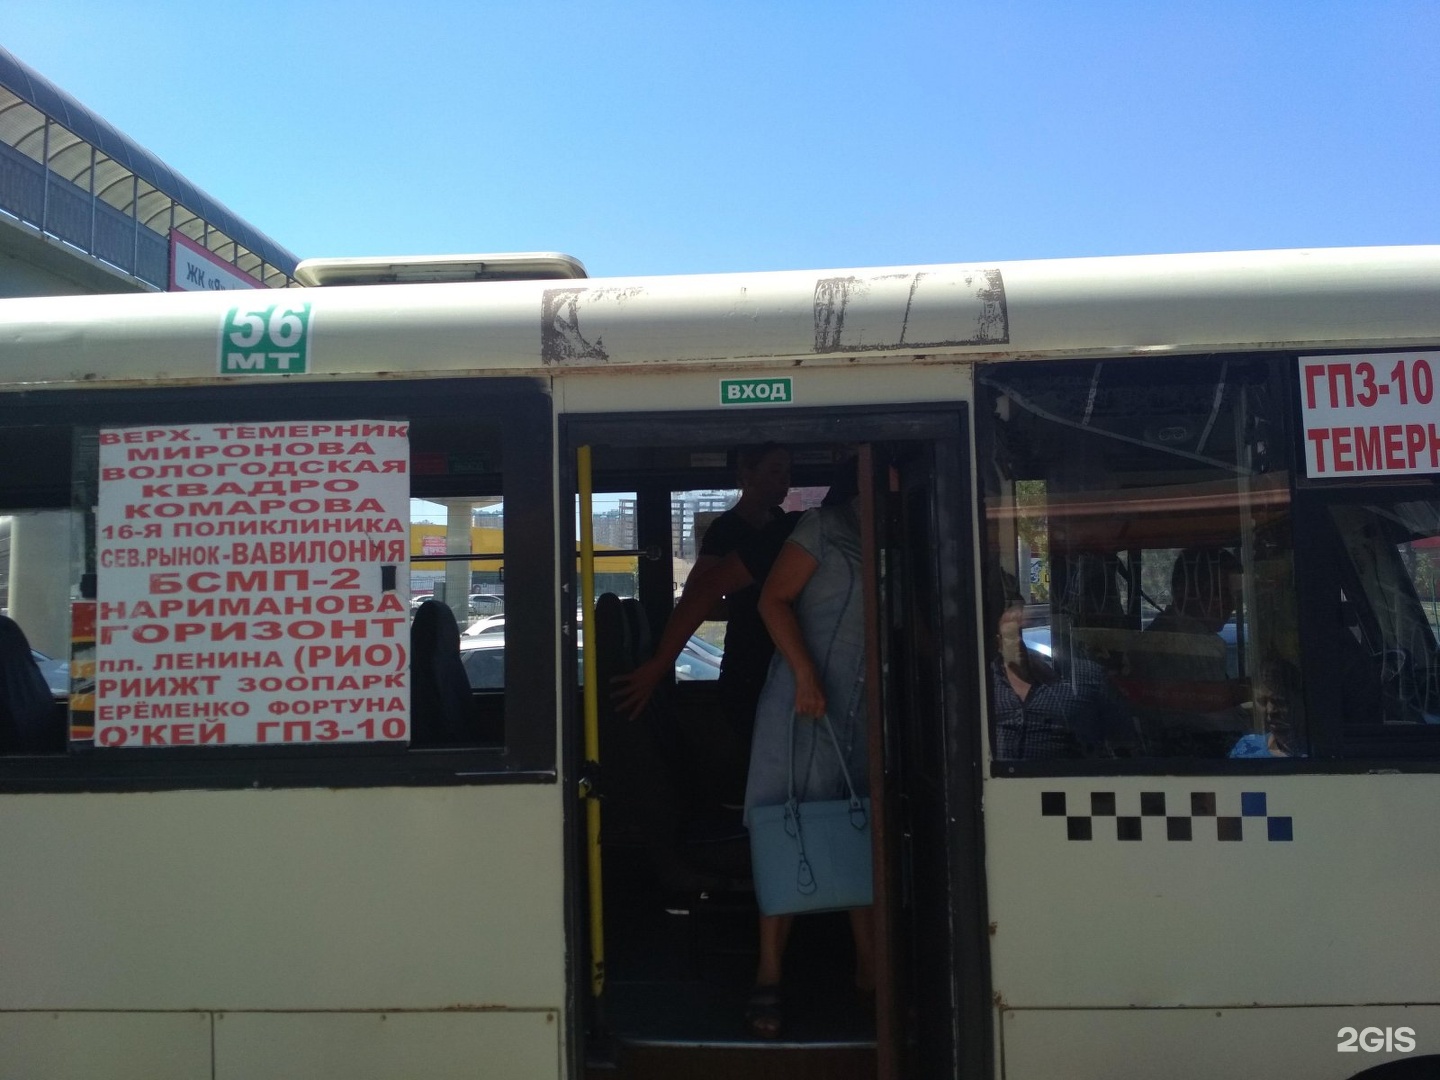 56 Автобус Ростов. 56 автобус ростов на дону маршрут